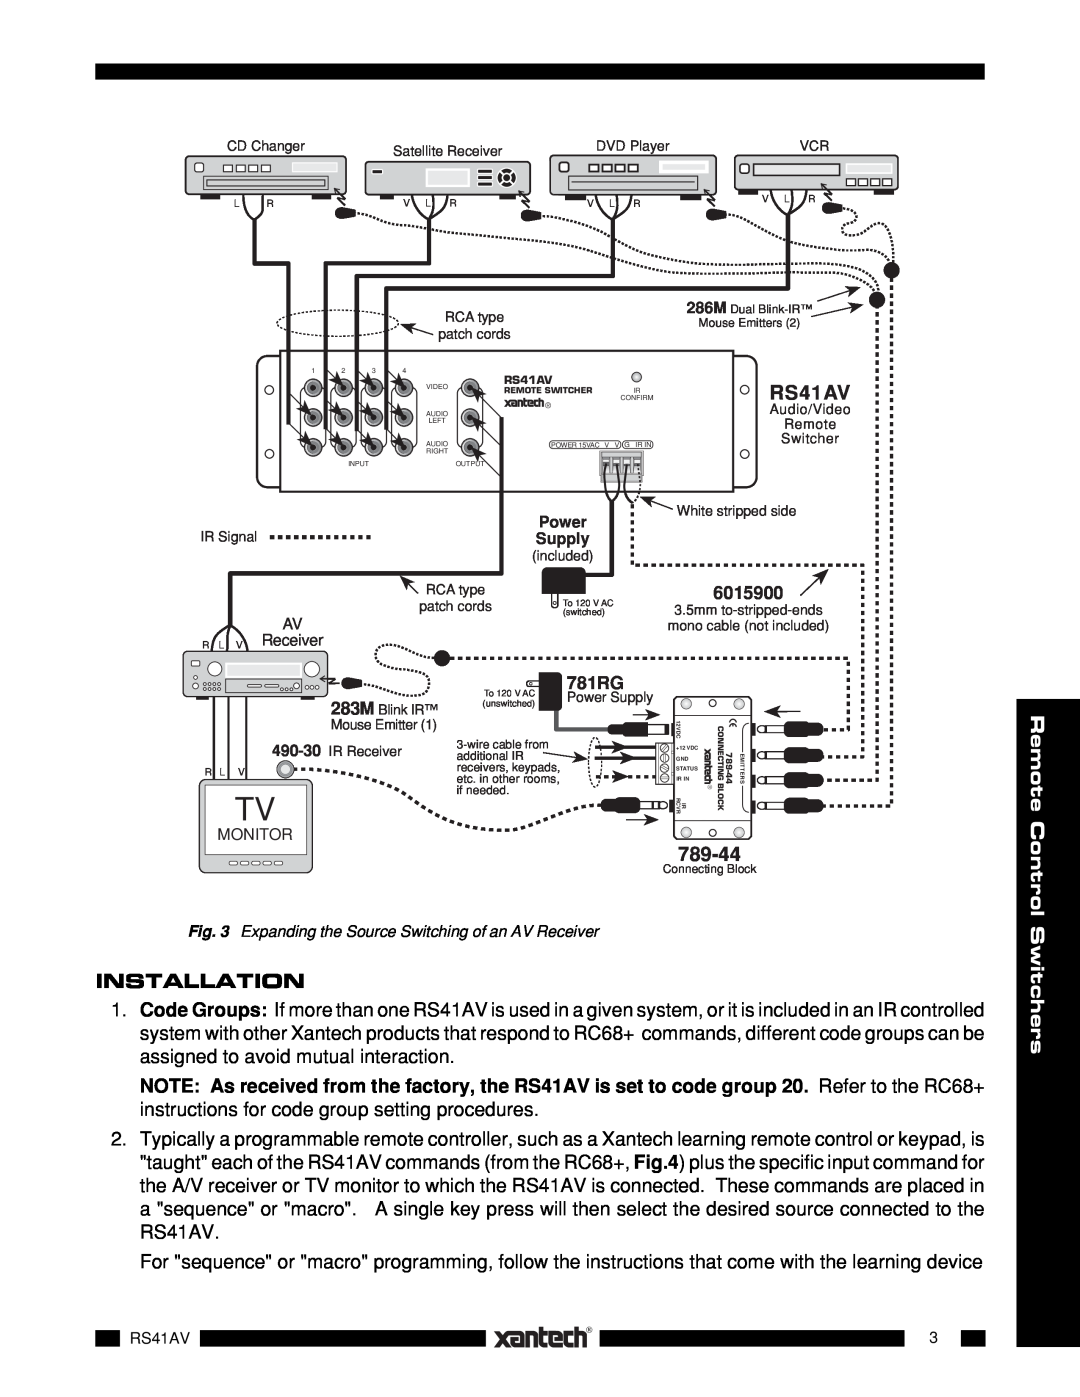 Xantech RS41AV installation instructions Installation, 789-44, 781RG, 6015900, Supply, R L V Receiver, Monitor, Power 